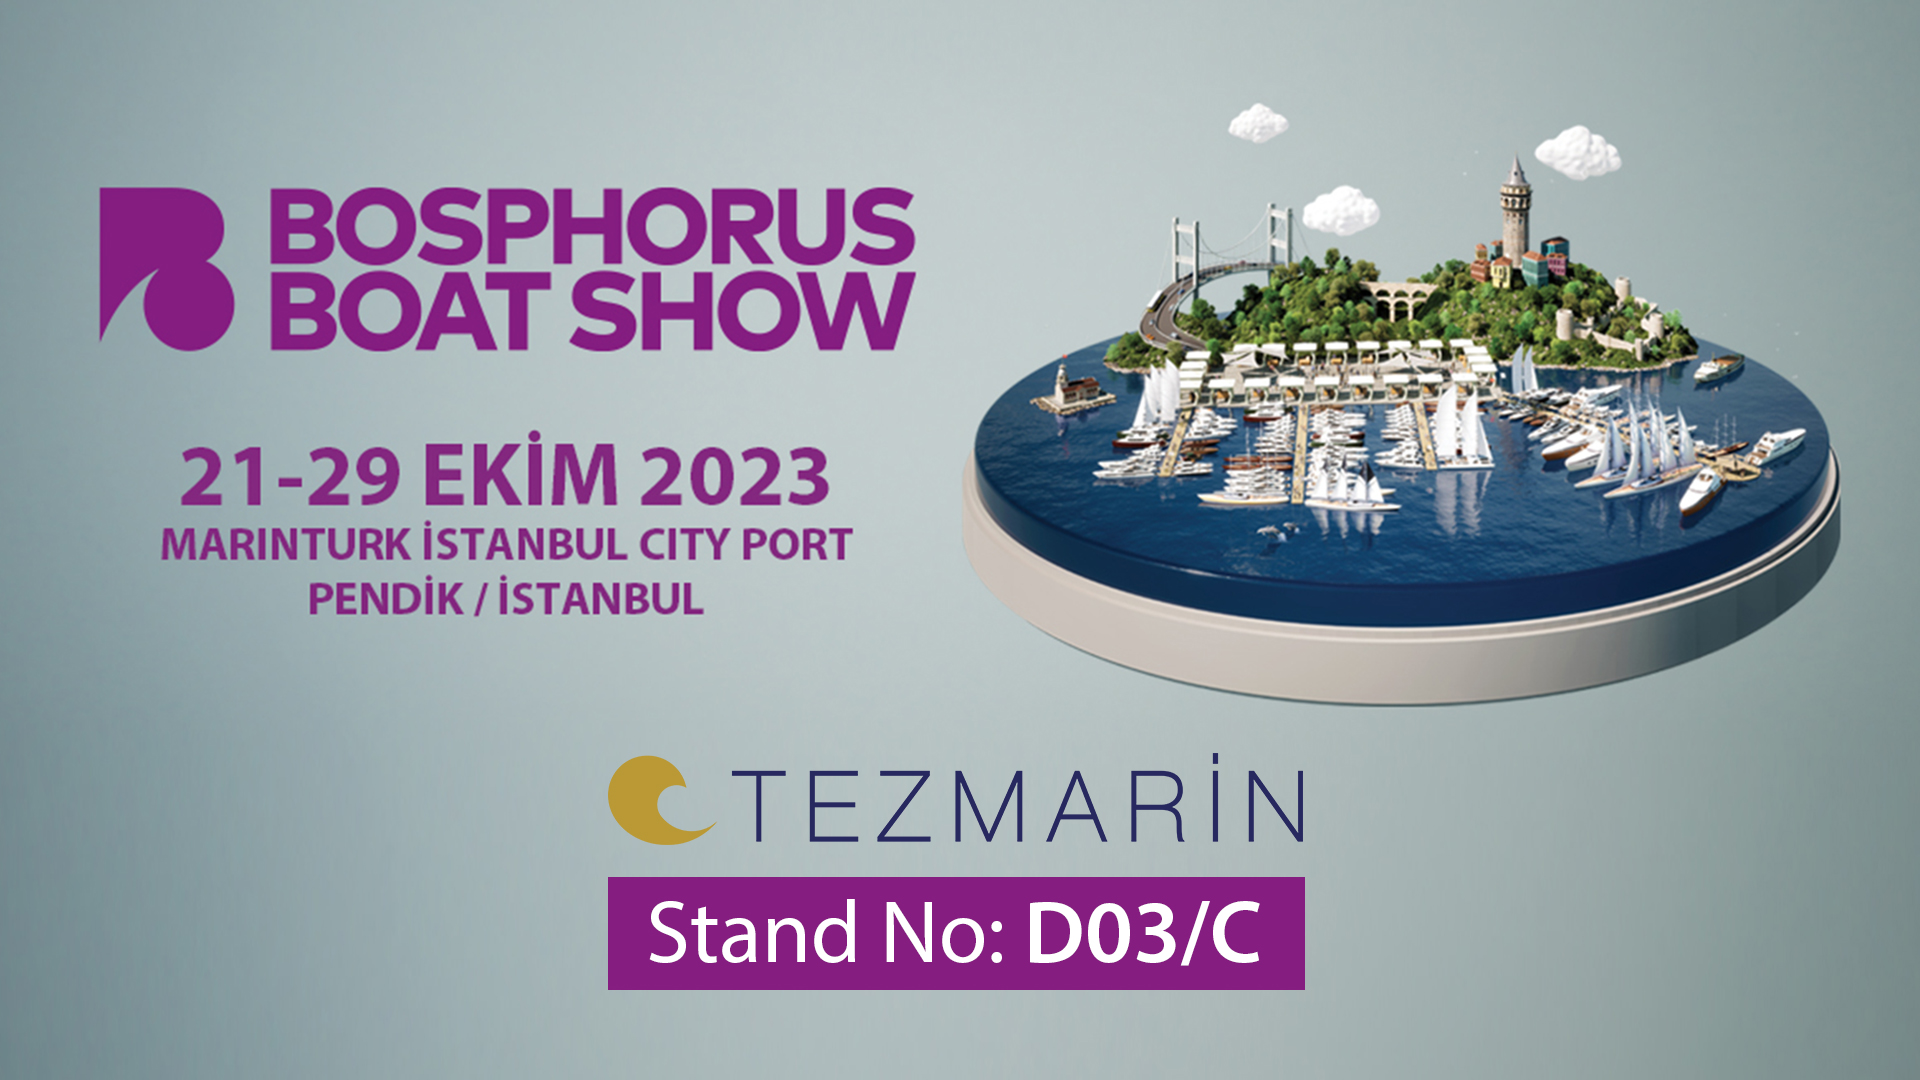 Bosphorus Boat Show’a davetlisiniz!